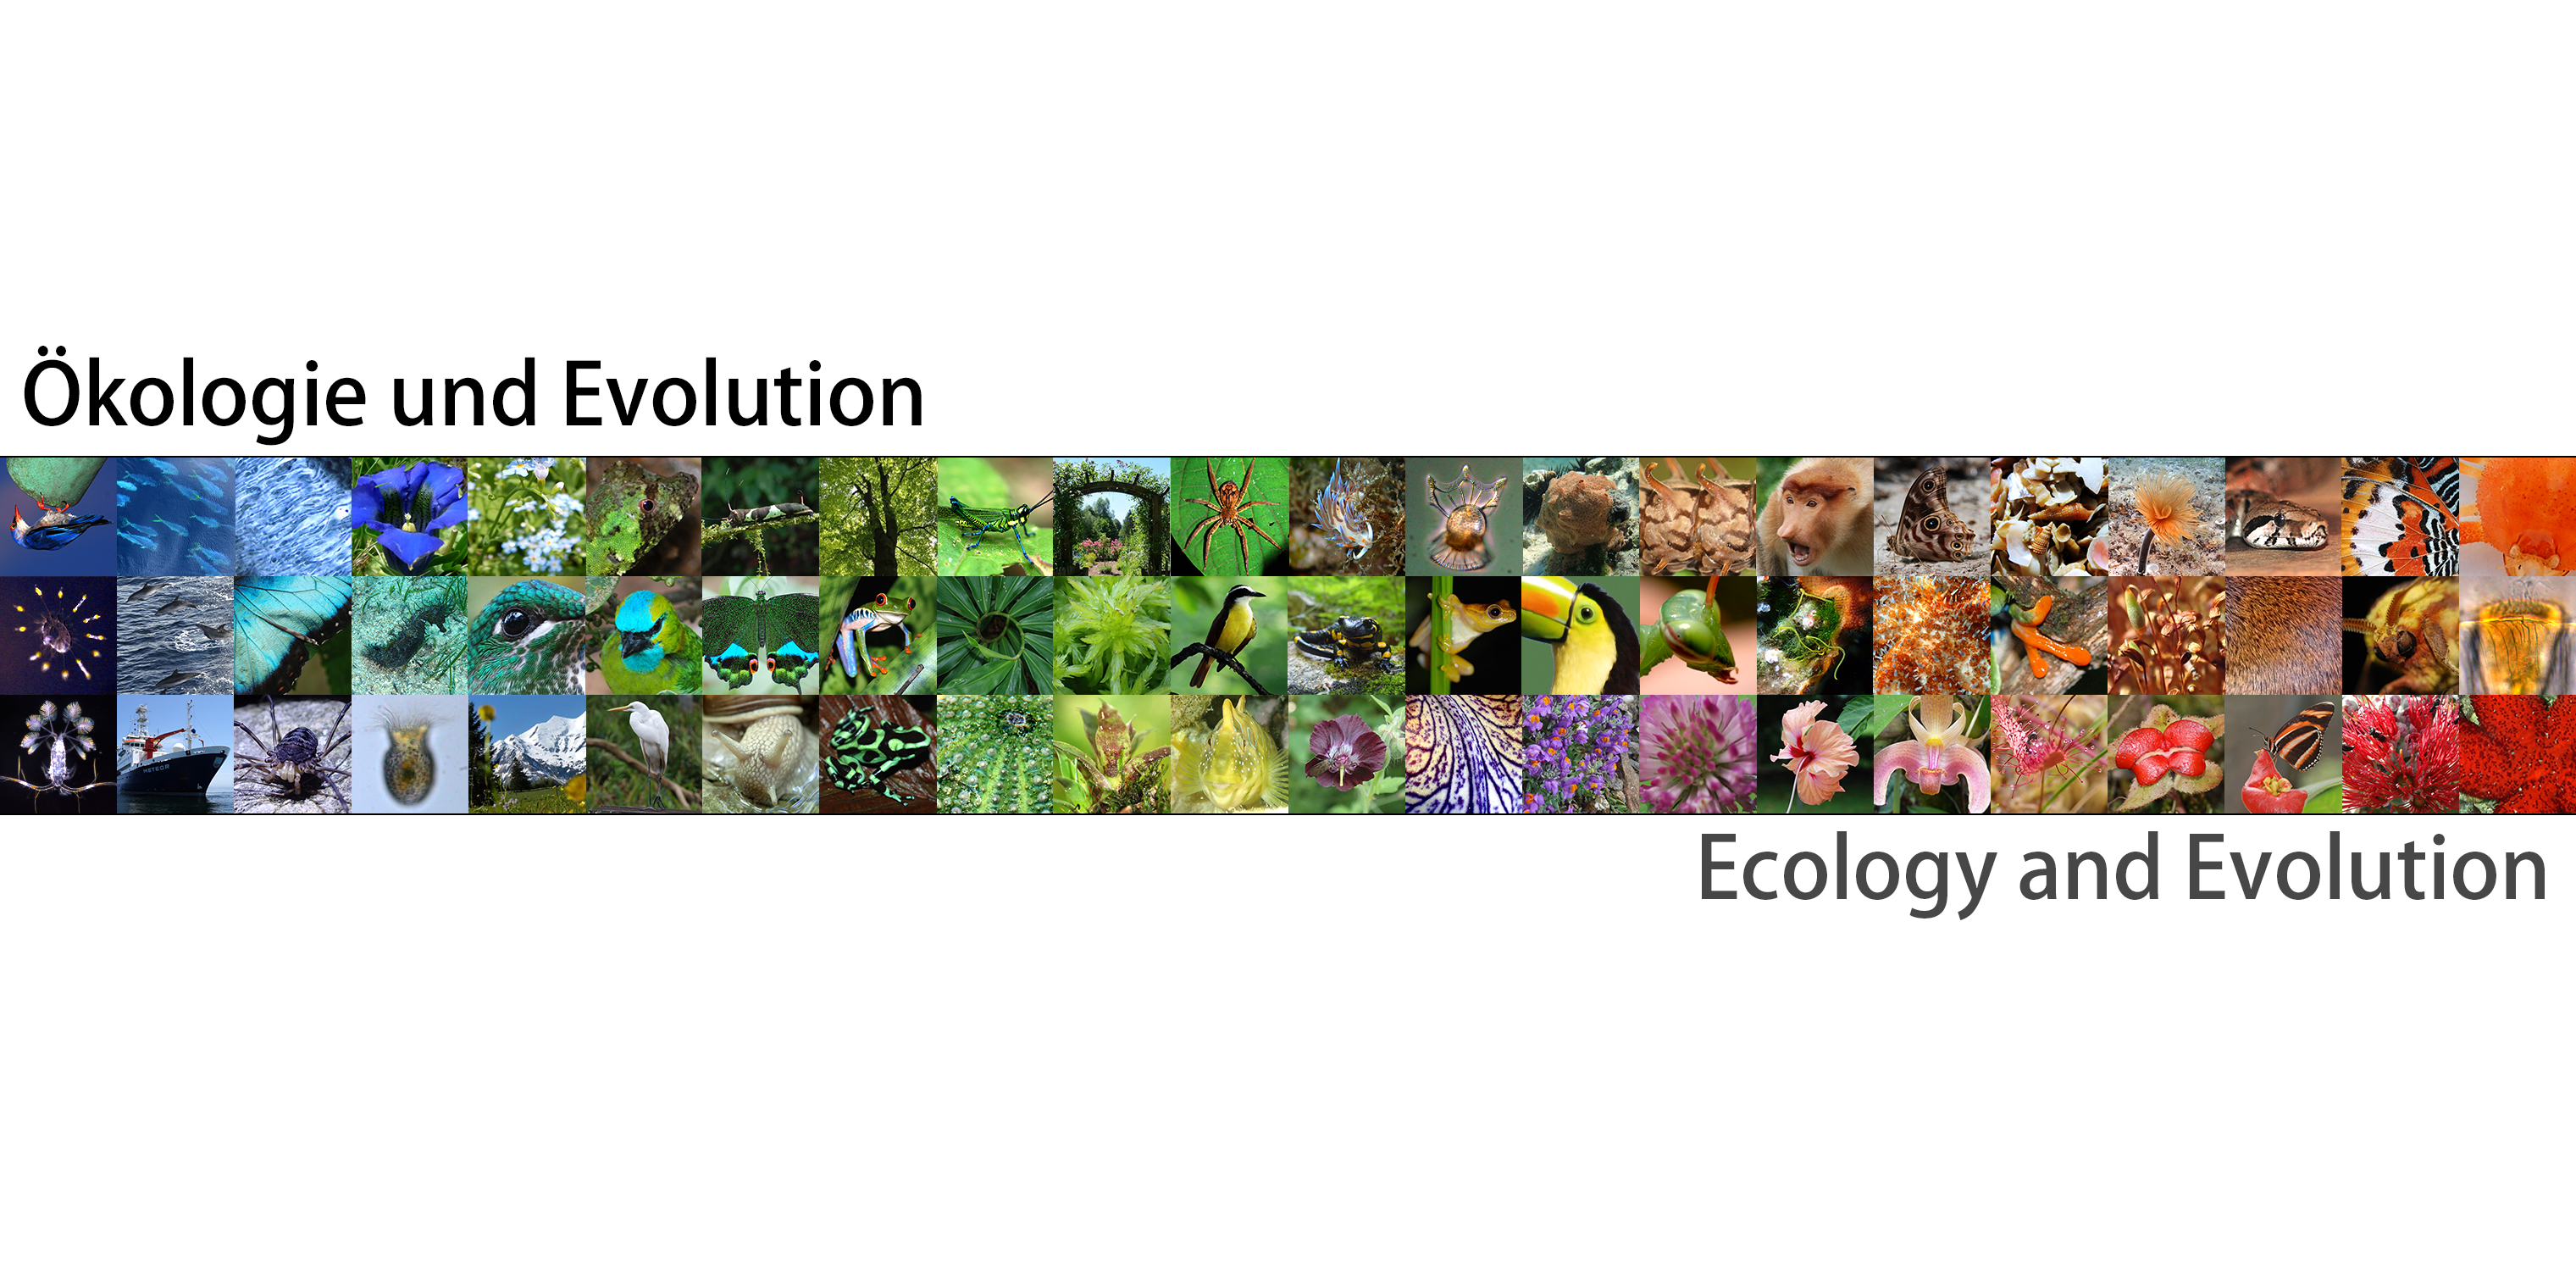 Department Ecology & Evolution/Fachbereich Ökologie und Evolution